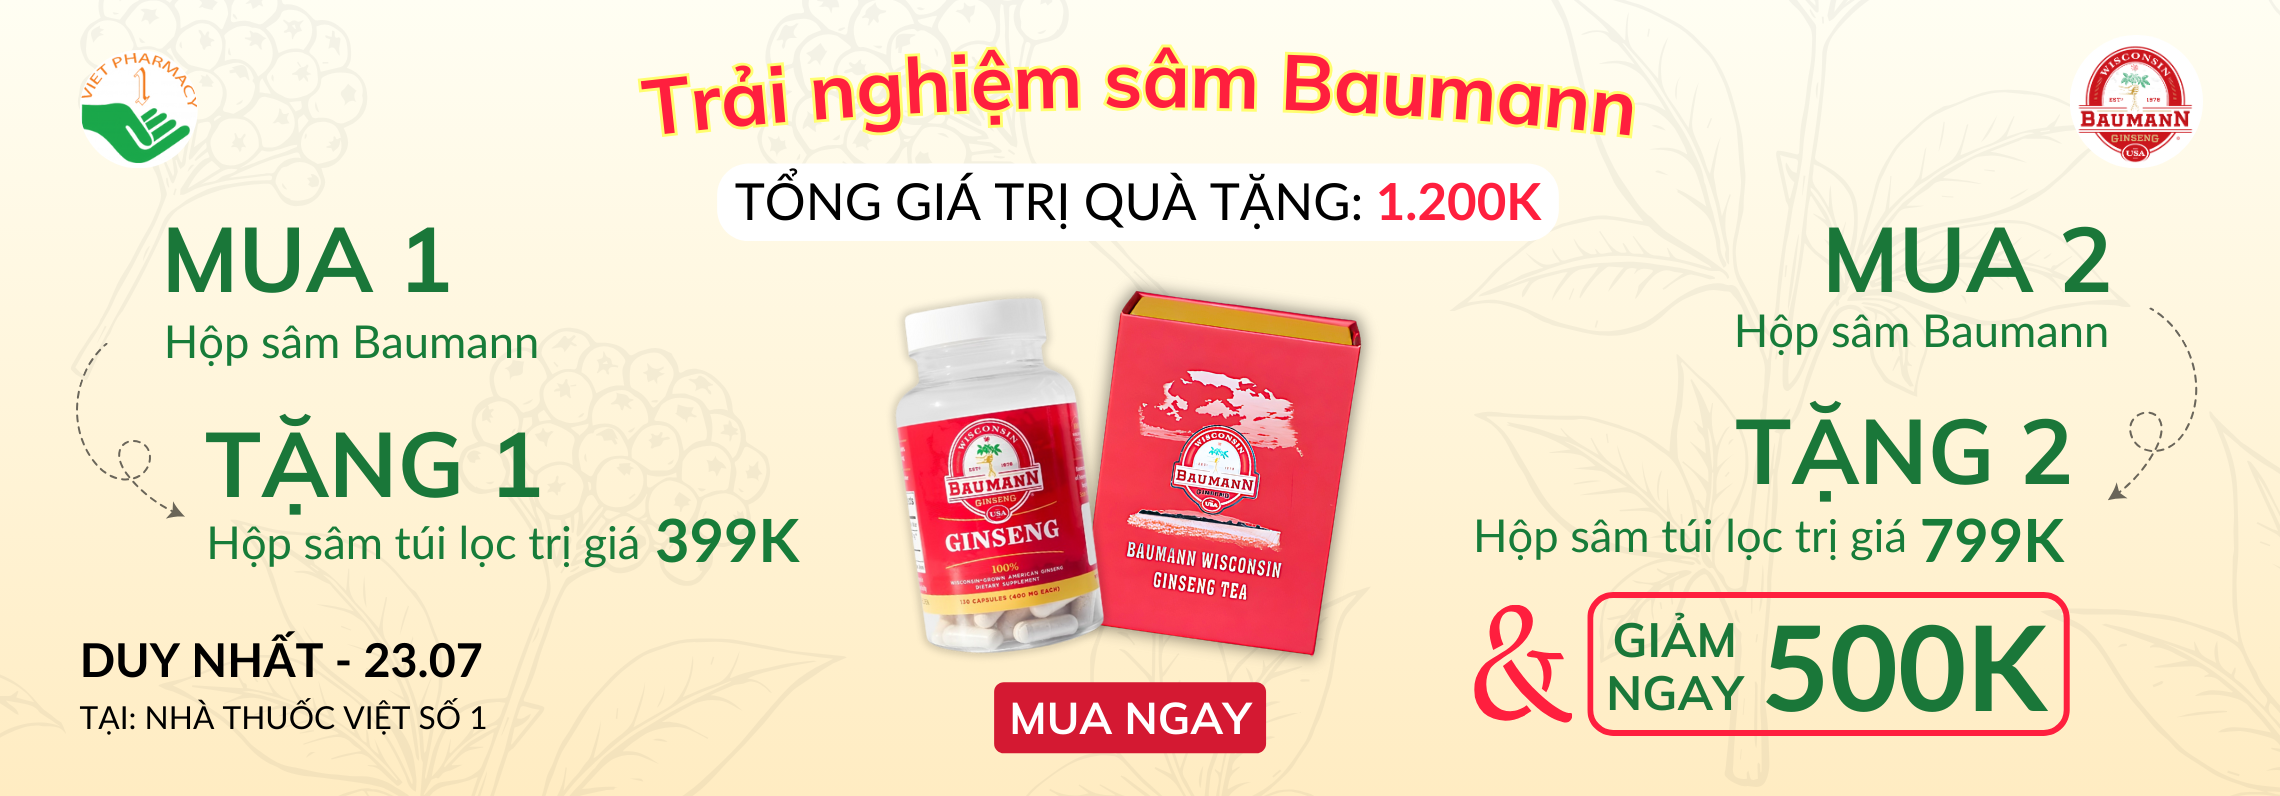 Chương trình trải nghiệm sâm BaumanN tại Nhà thuốc Việt Số 1 cùng khuyến mãi lên đến 1.200.000 VNĐ